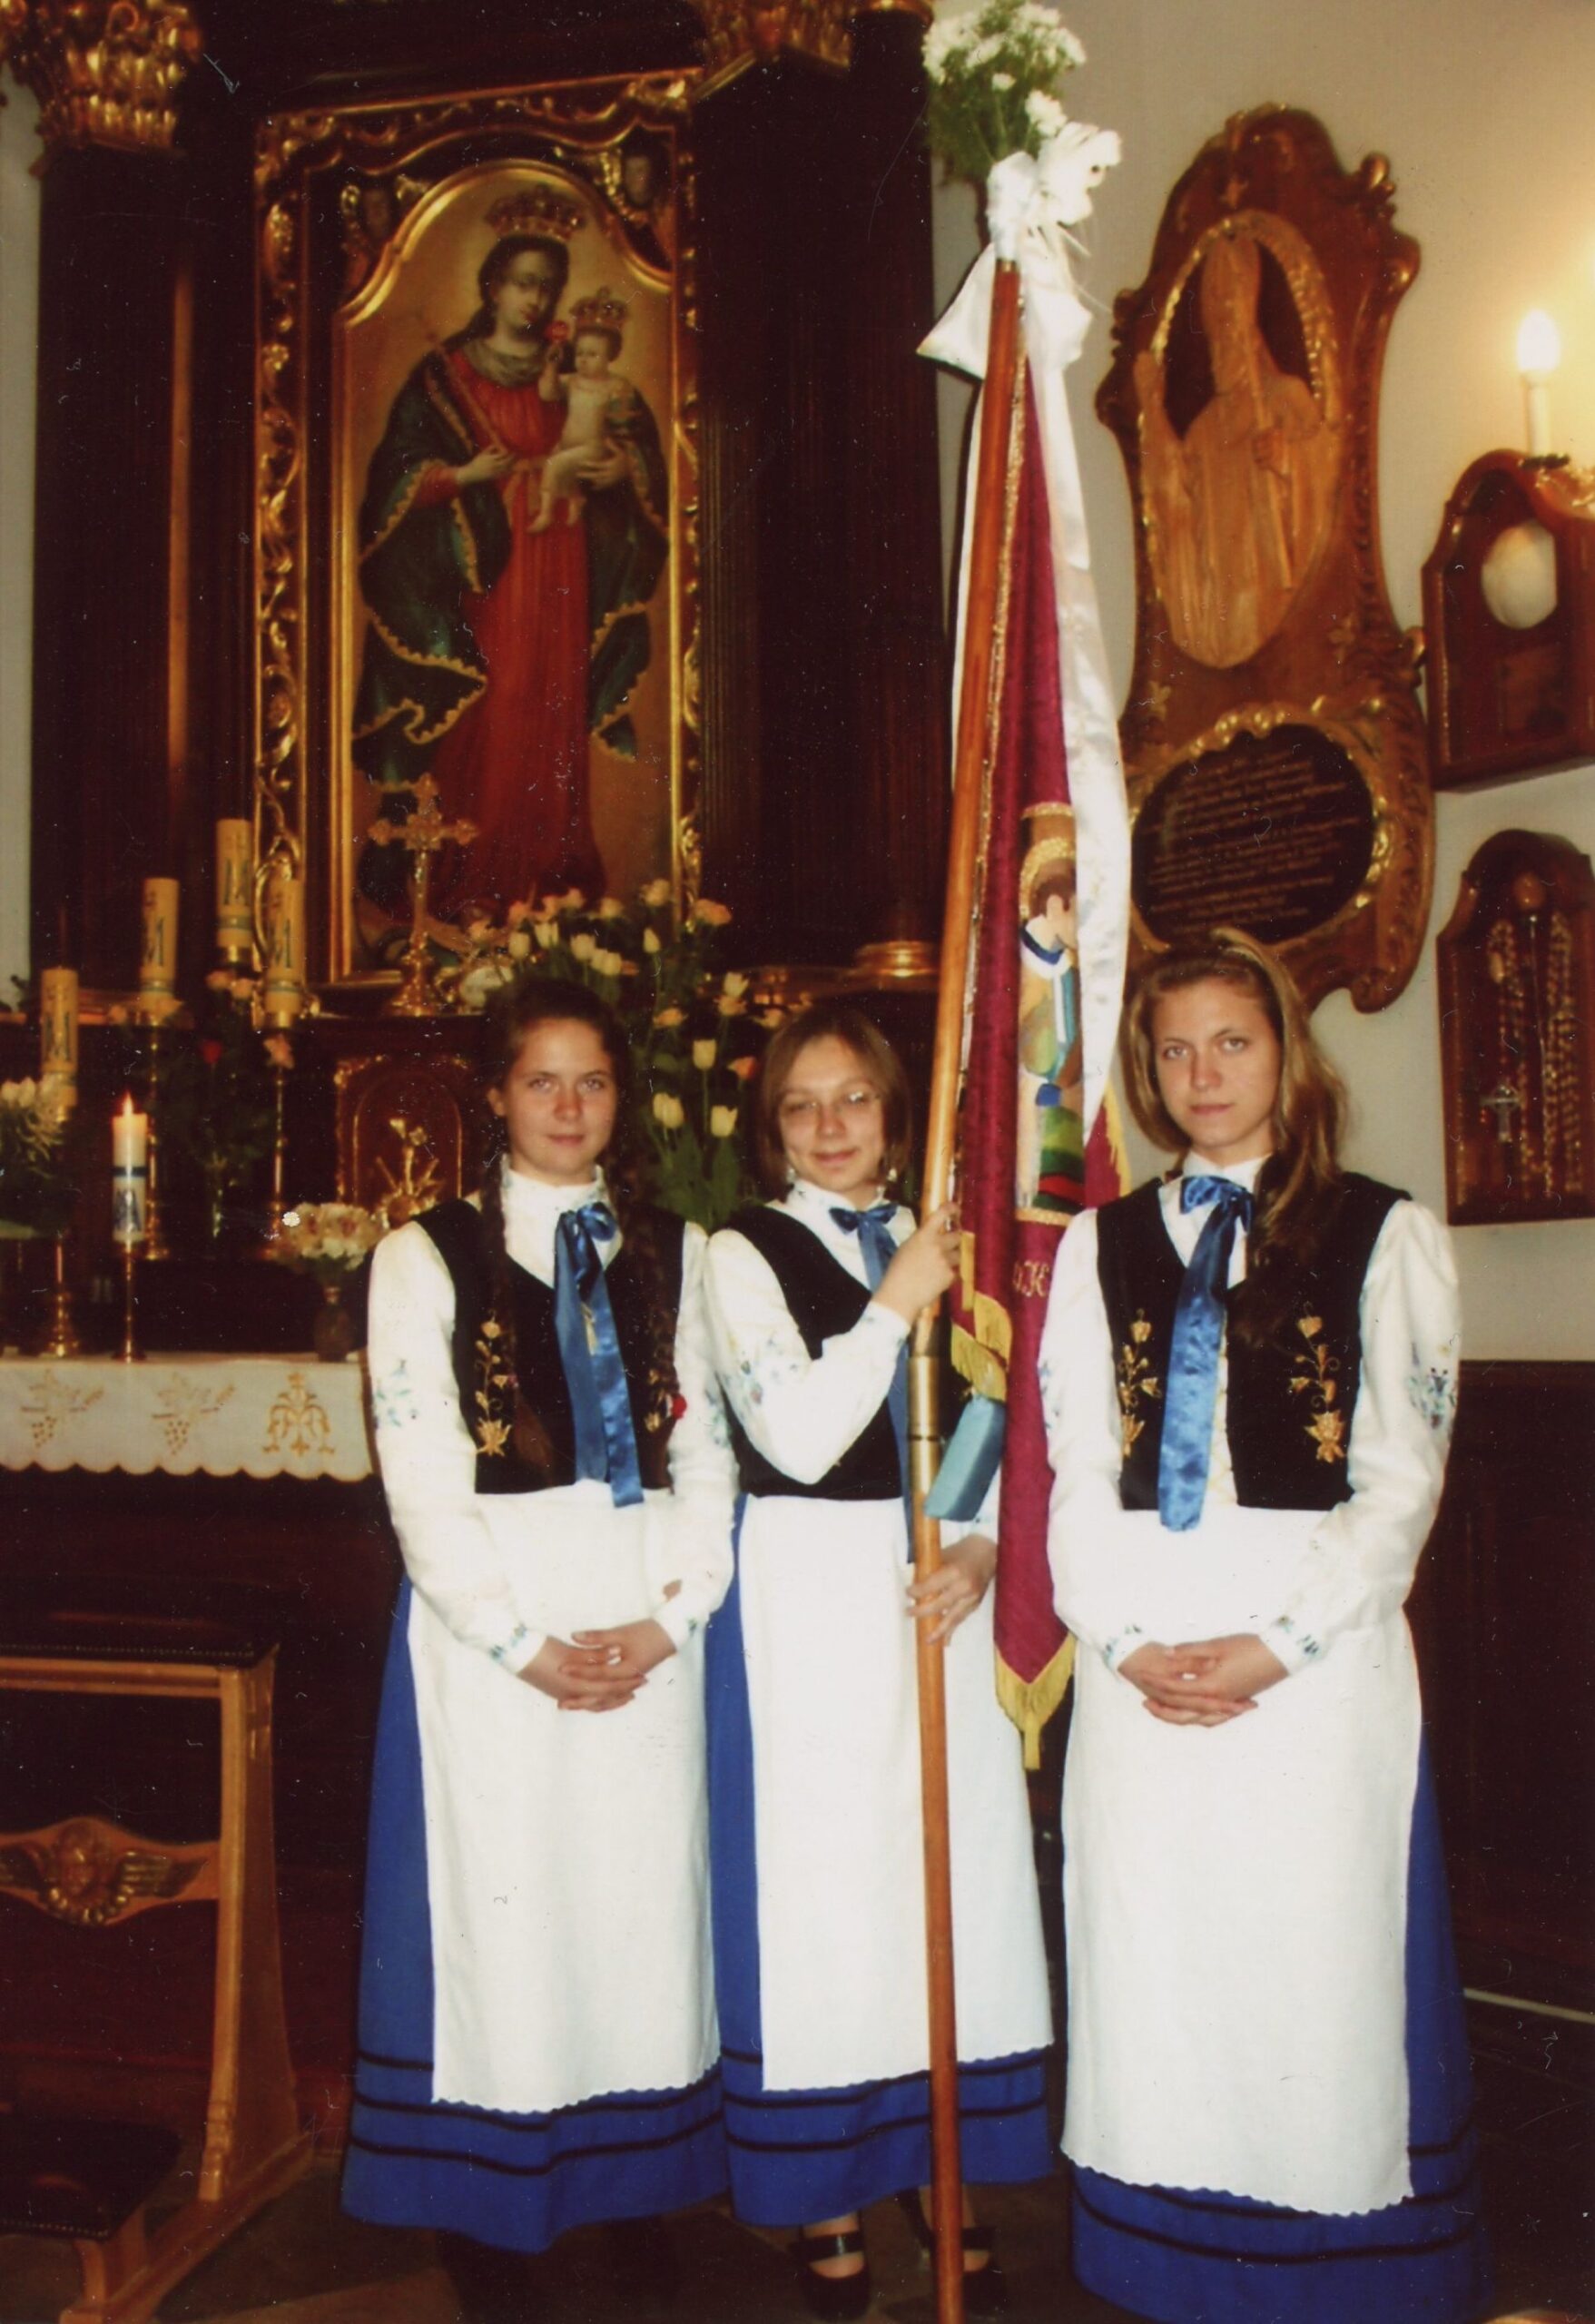 Pielgrzymka z Gdańska-Oliwy na Kalwarię Wejherowską. Trzy dziewczyny ubrane w stroje ludowe stoją w kościele z proporcem.